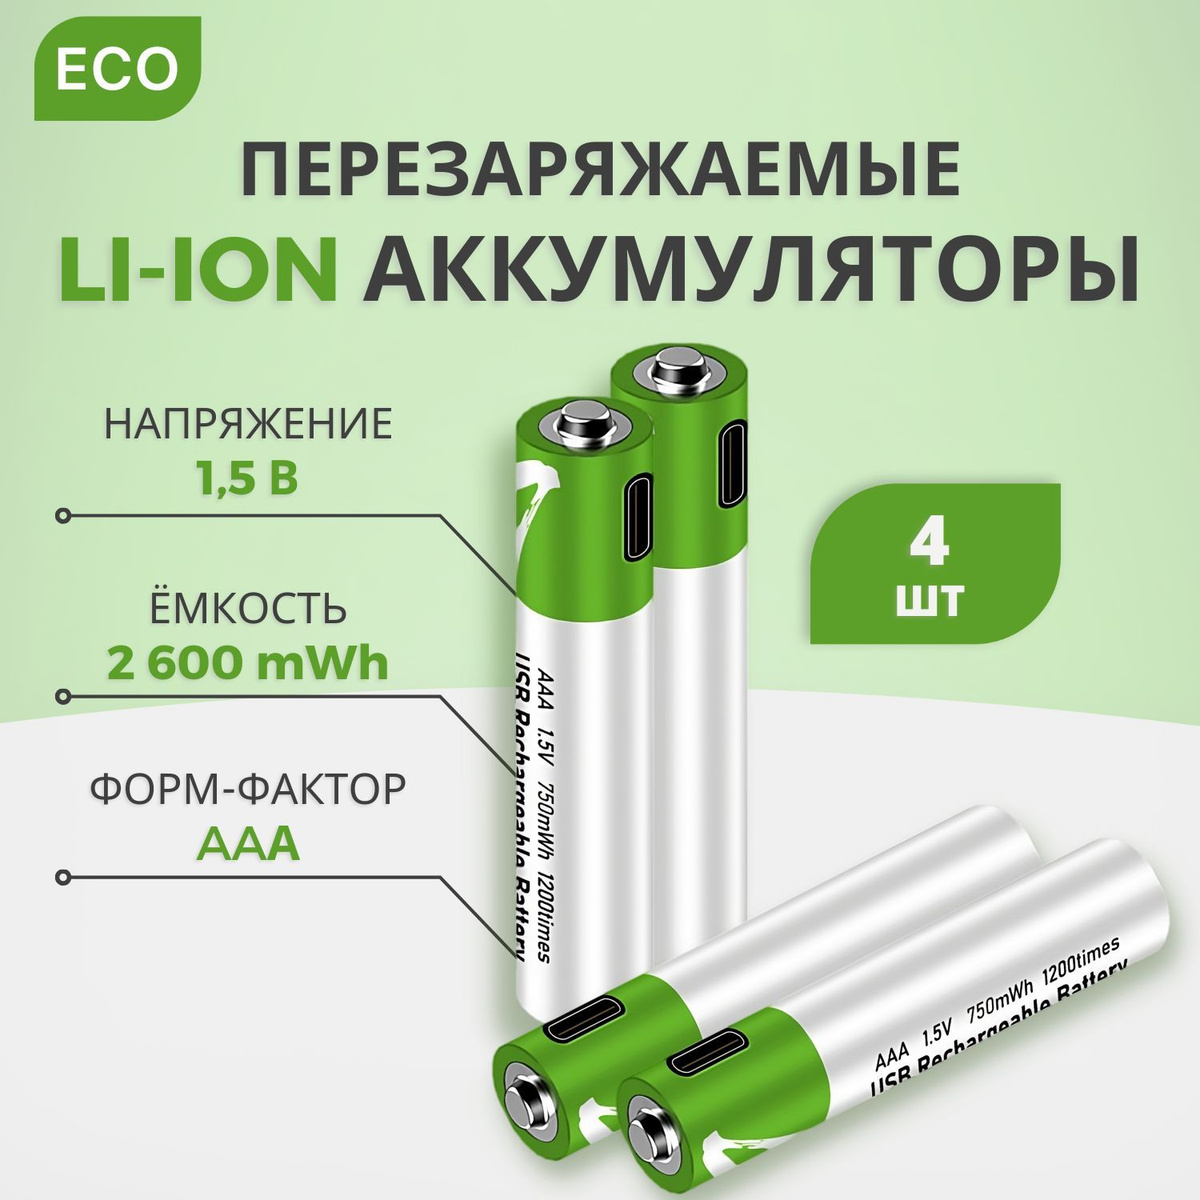 Батарейки аккумуляторные, Тип AAA Литиевый 4 шт, мизинчиковые аккумуляторы (Li-ion), 1.5V с кабелем для зарядки от USB Type-C